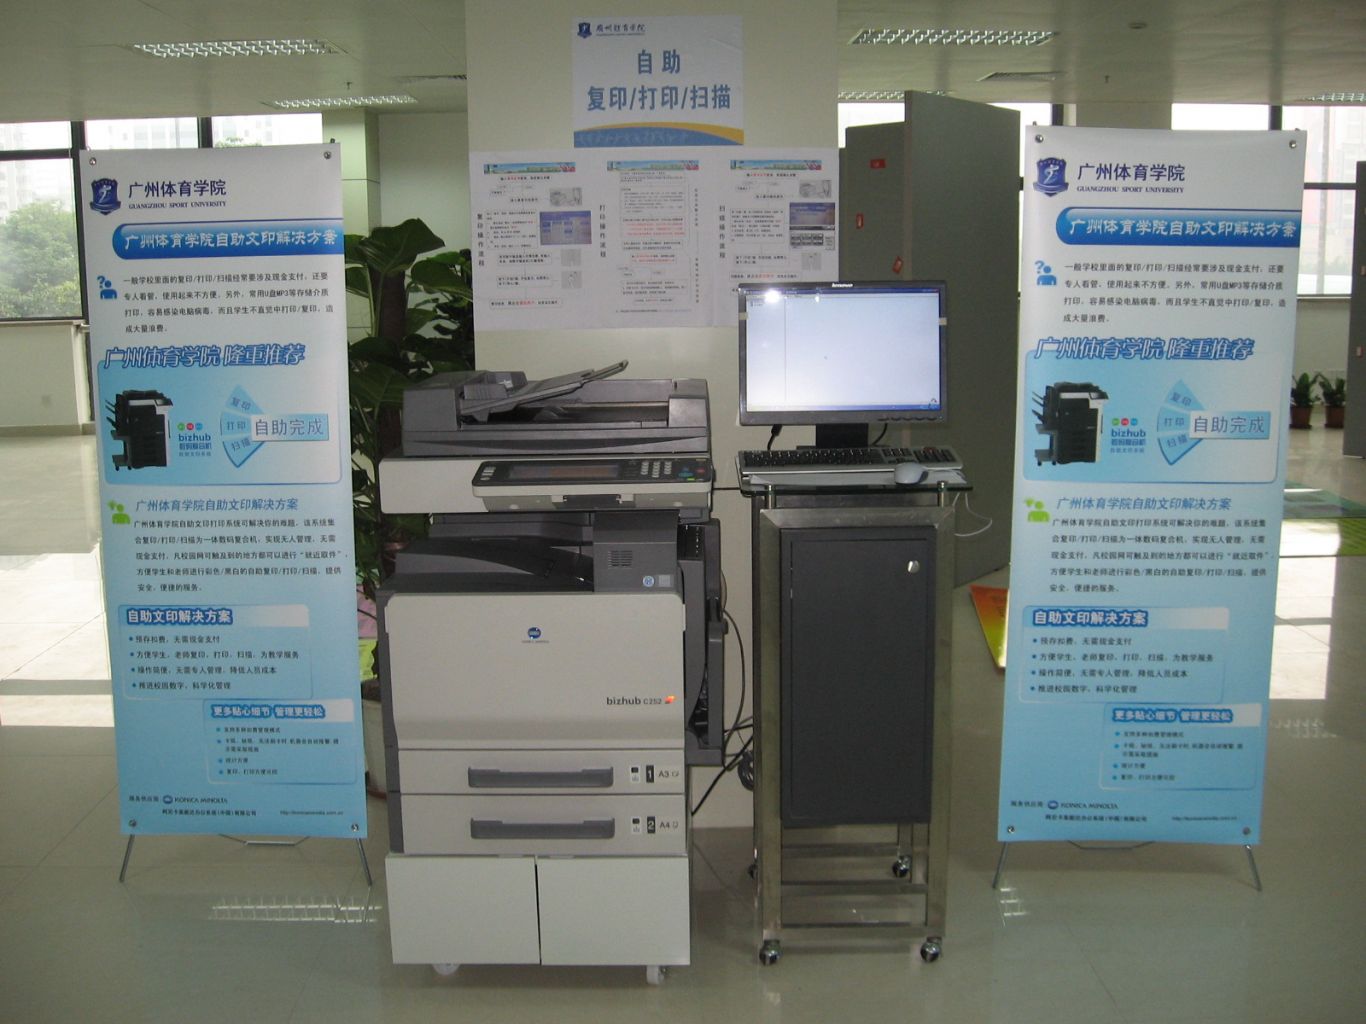 校园自助打印复印系统